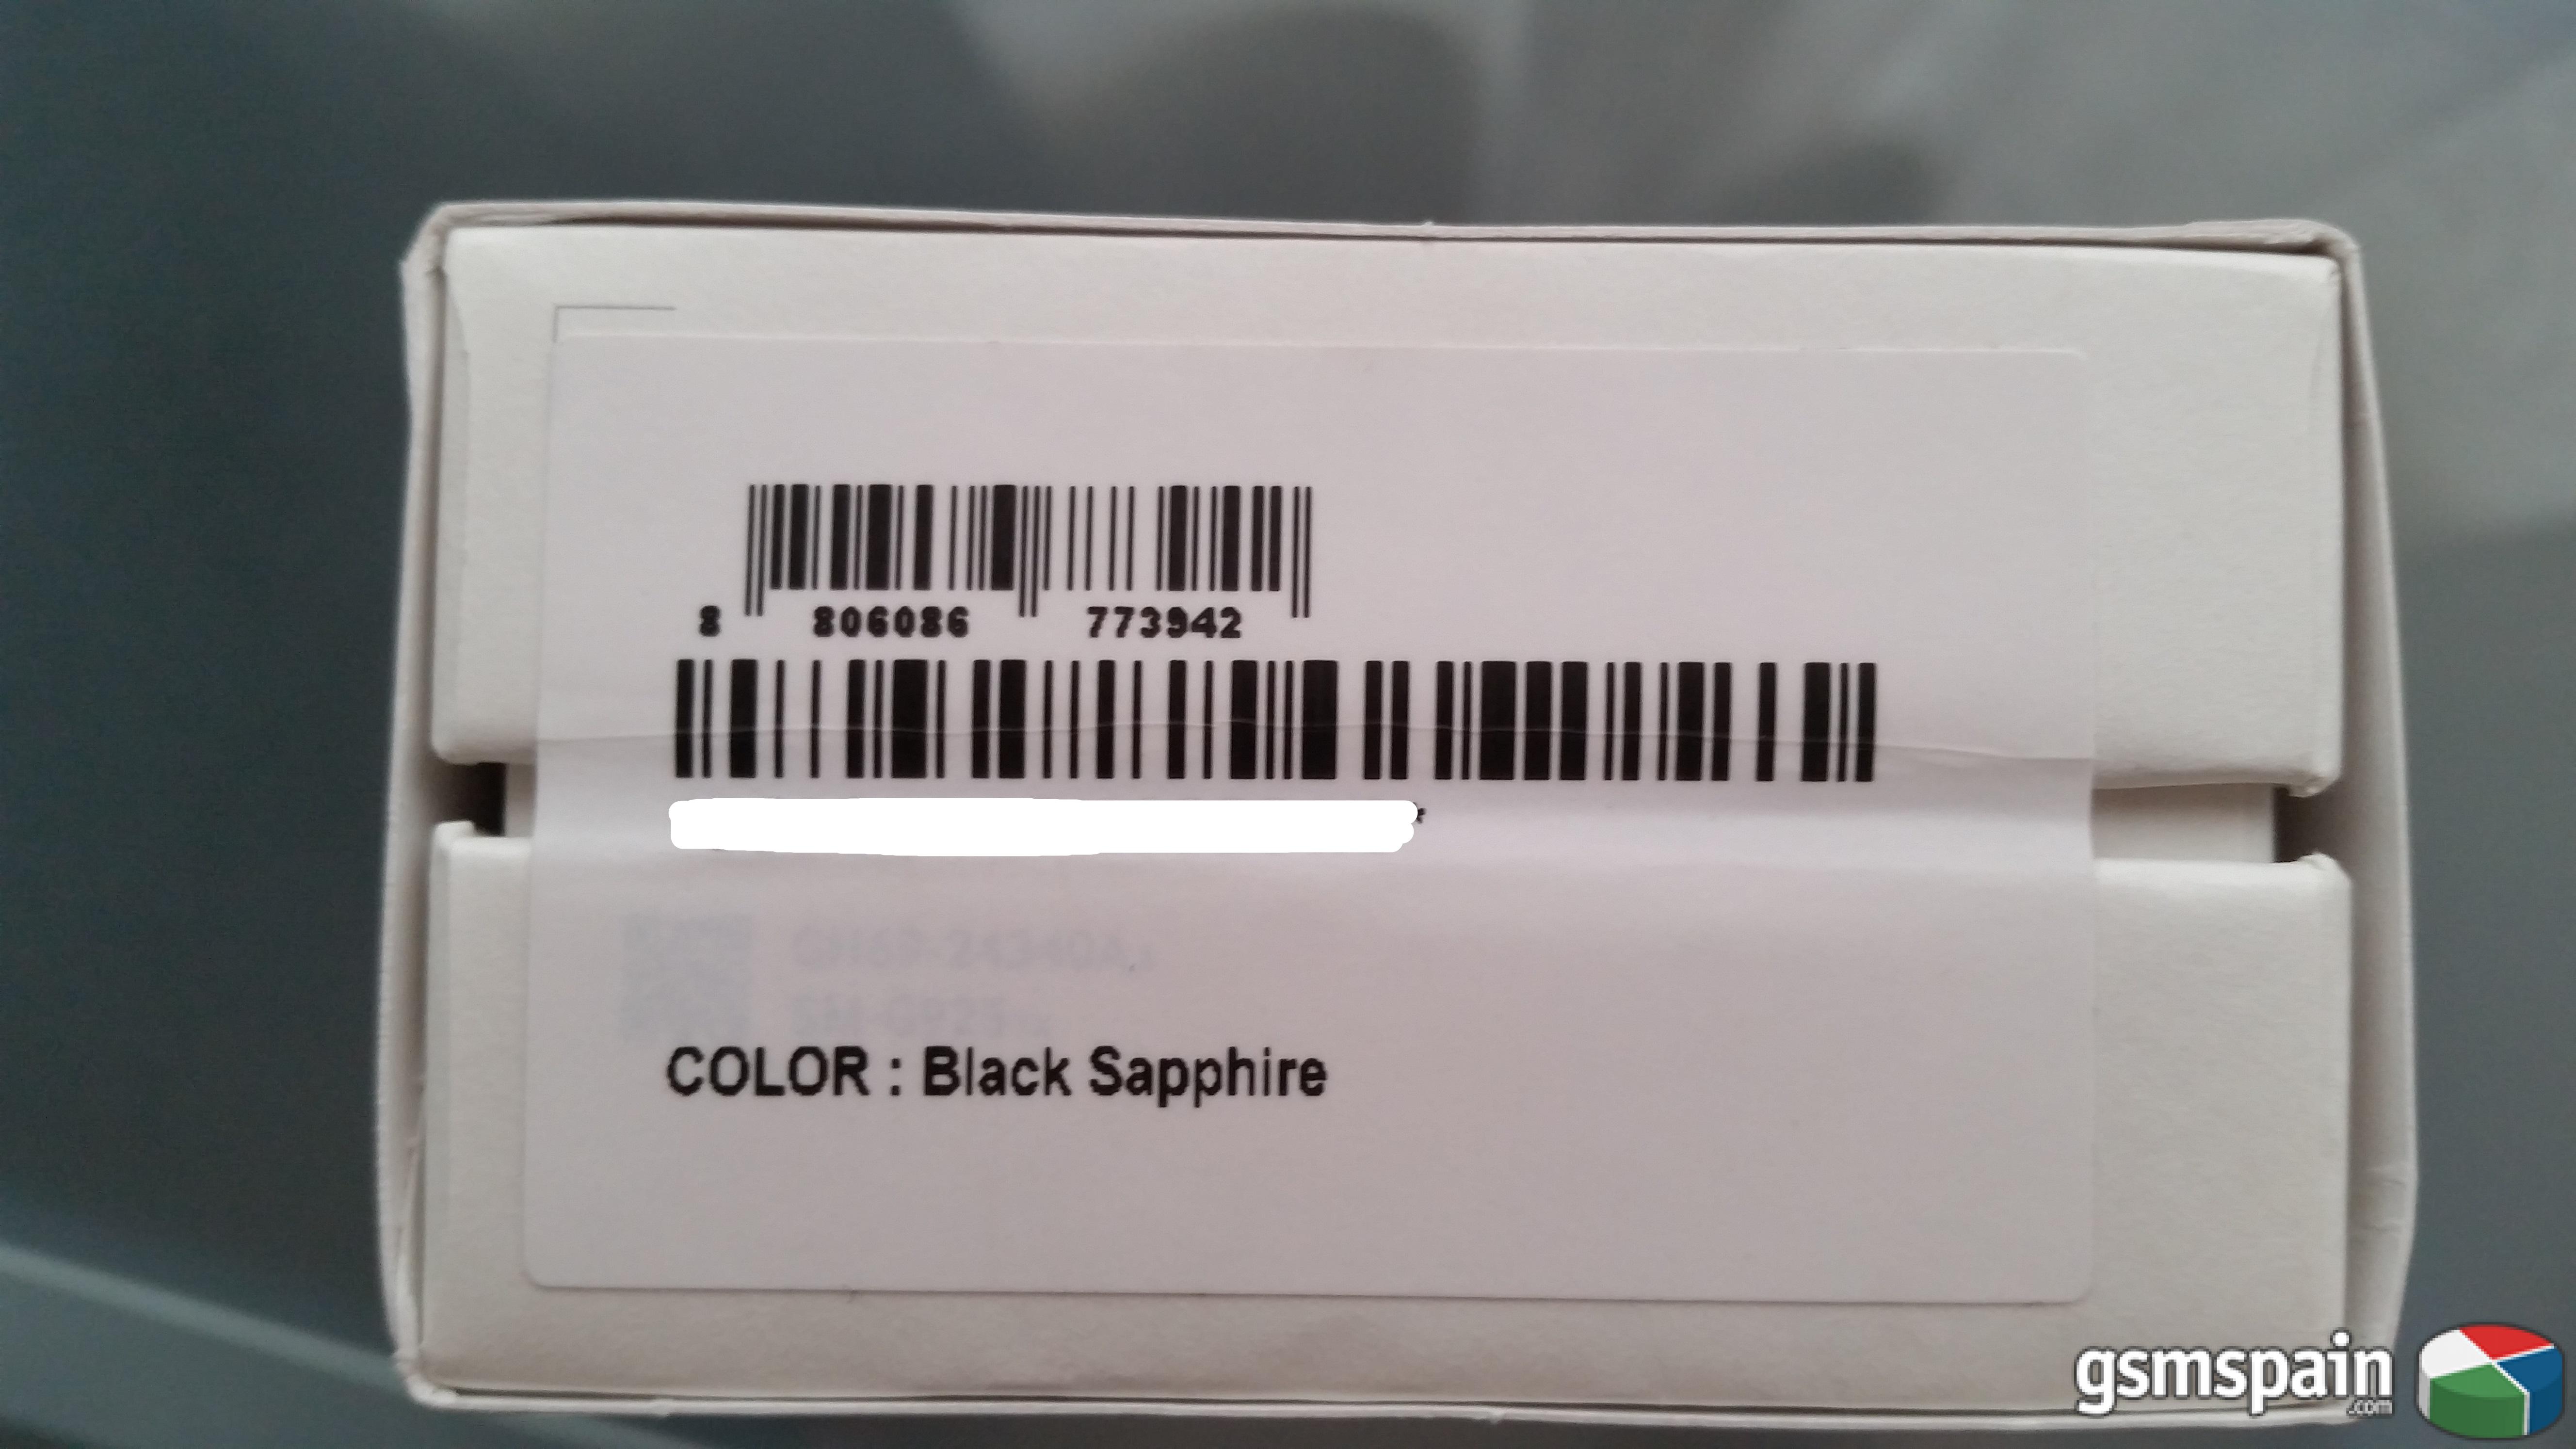 [VENDO] Samsung Galaxy S6 Edge "Black Sapphire"